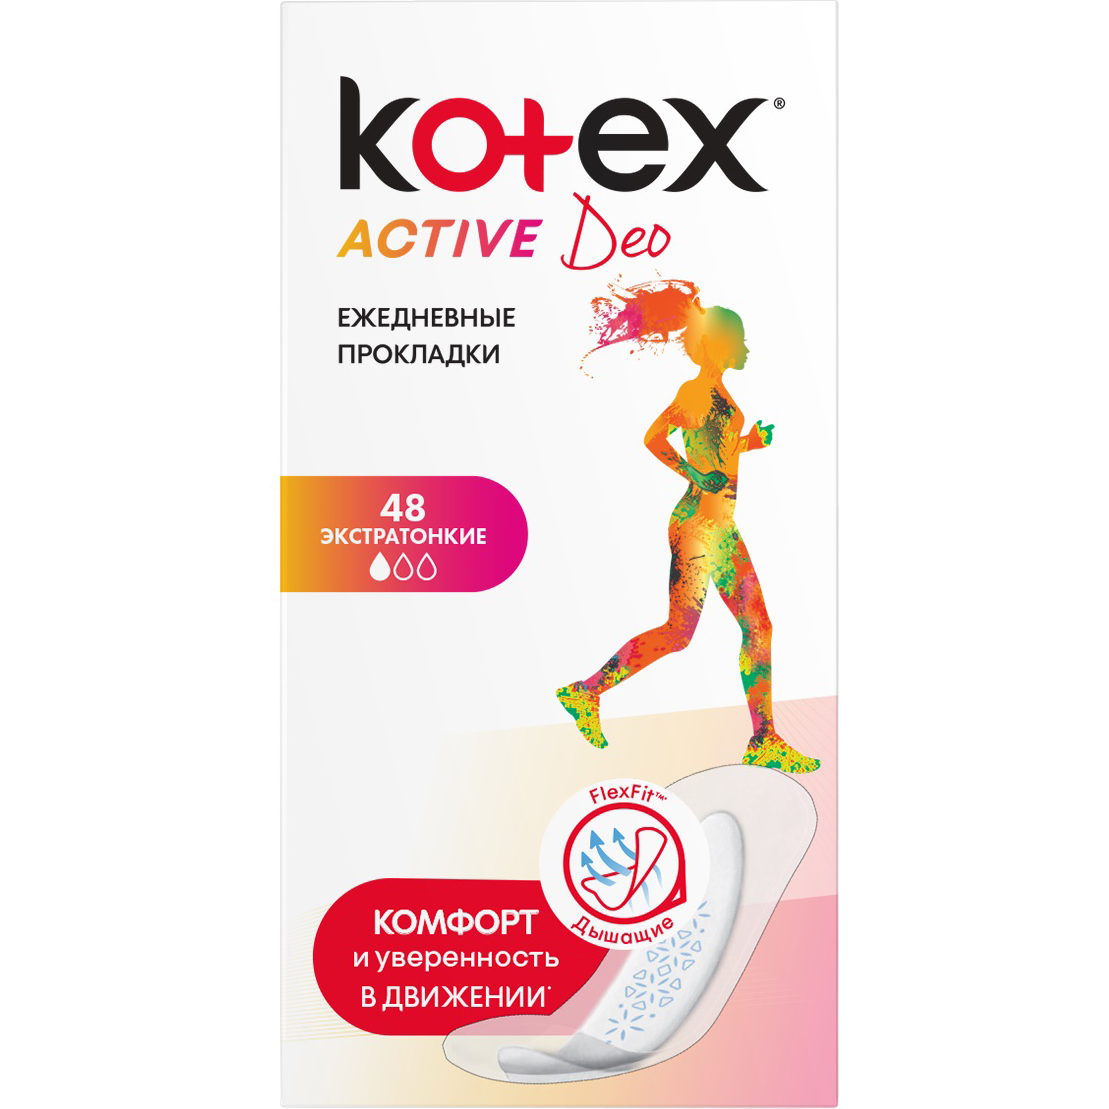 Прокладки Kotex Active Deo Экстратонкие 48 шт прокладки kotex active deo ежедневные 48 шт